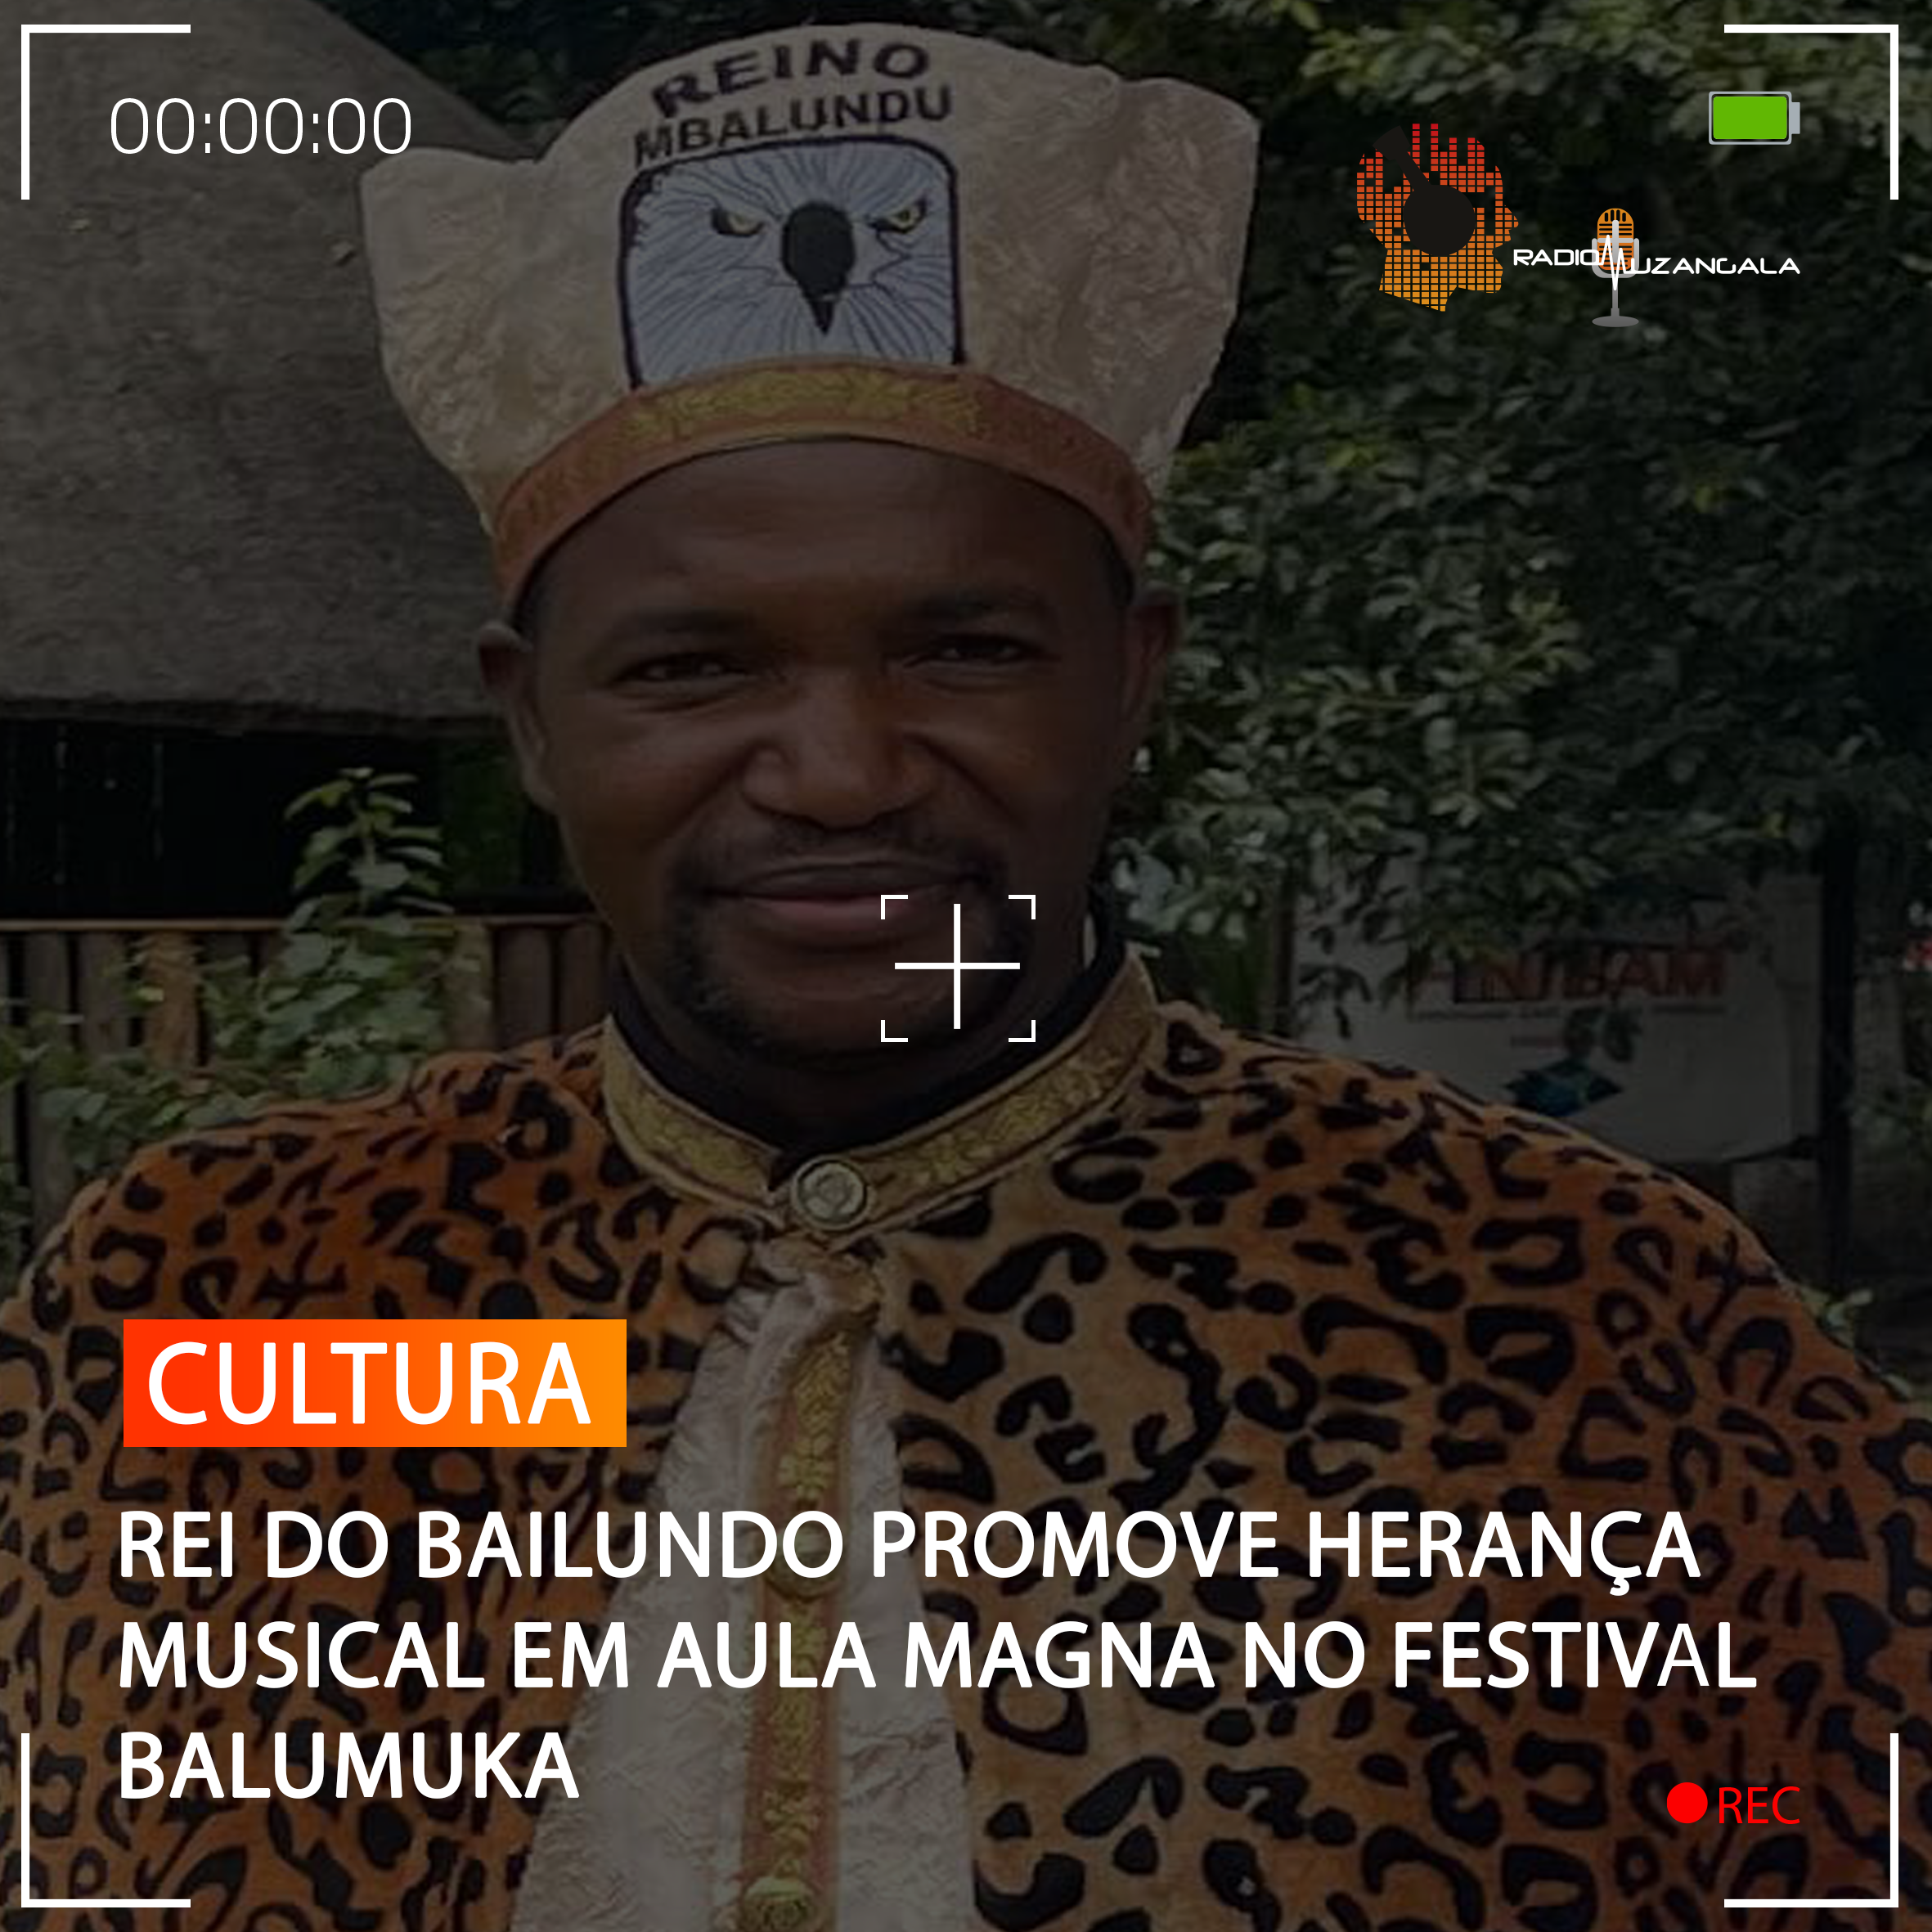  REI DO BAILUNDO PROMOVE HERANÇA MUSICAL EM AULA MAGNA NO FESTIVAL BALUMUKA